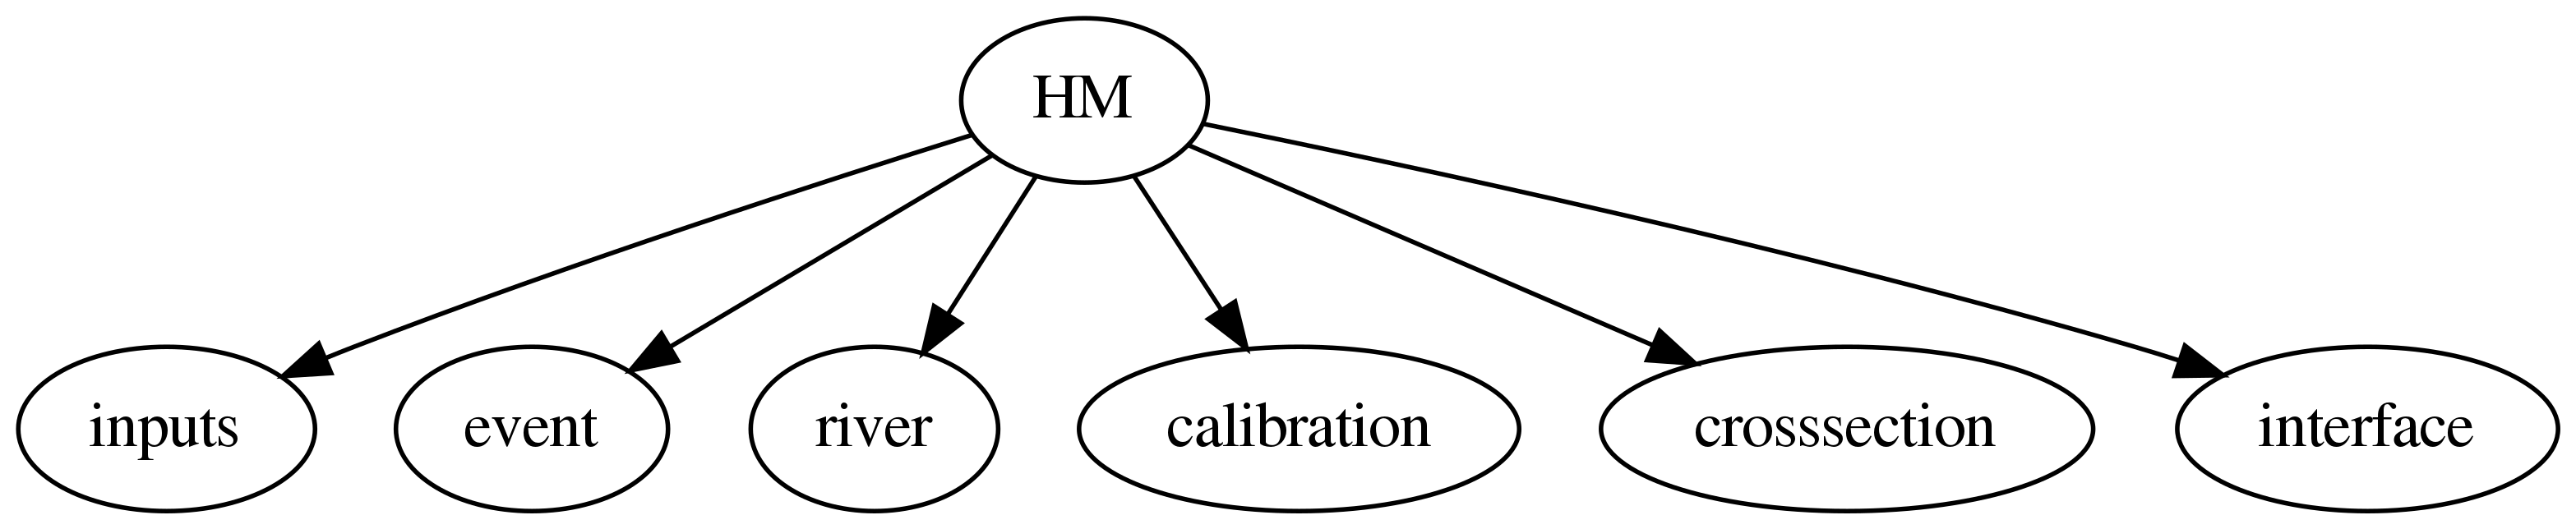 digraph Linking {
HM -> inputs;
HM -> event;
HM -> river;
HM -> calibration;
HM -> crosssection;
HM -> interface;
dpi=400;
}